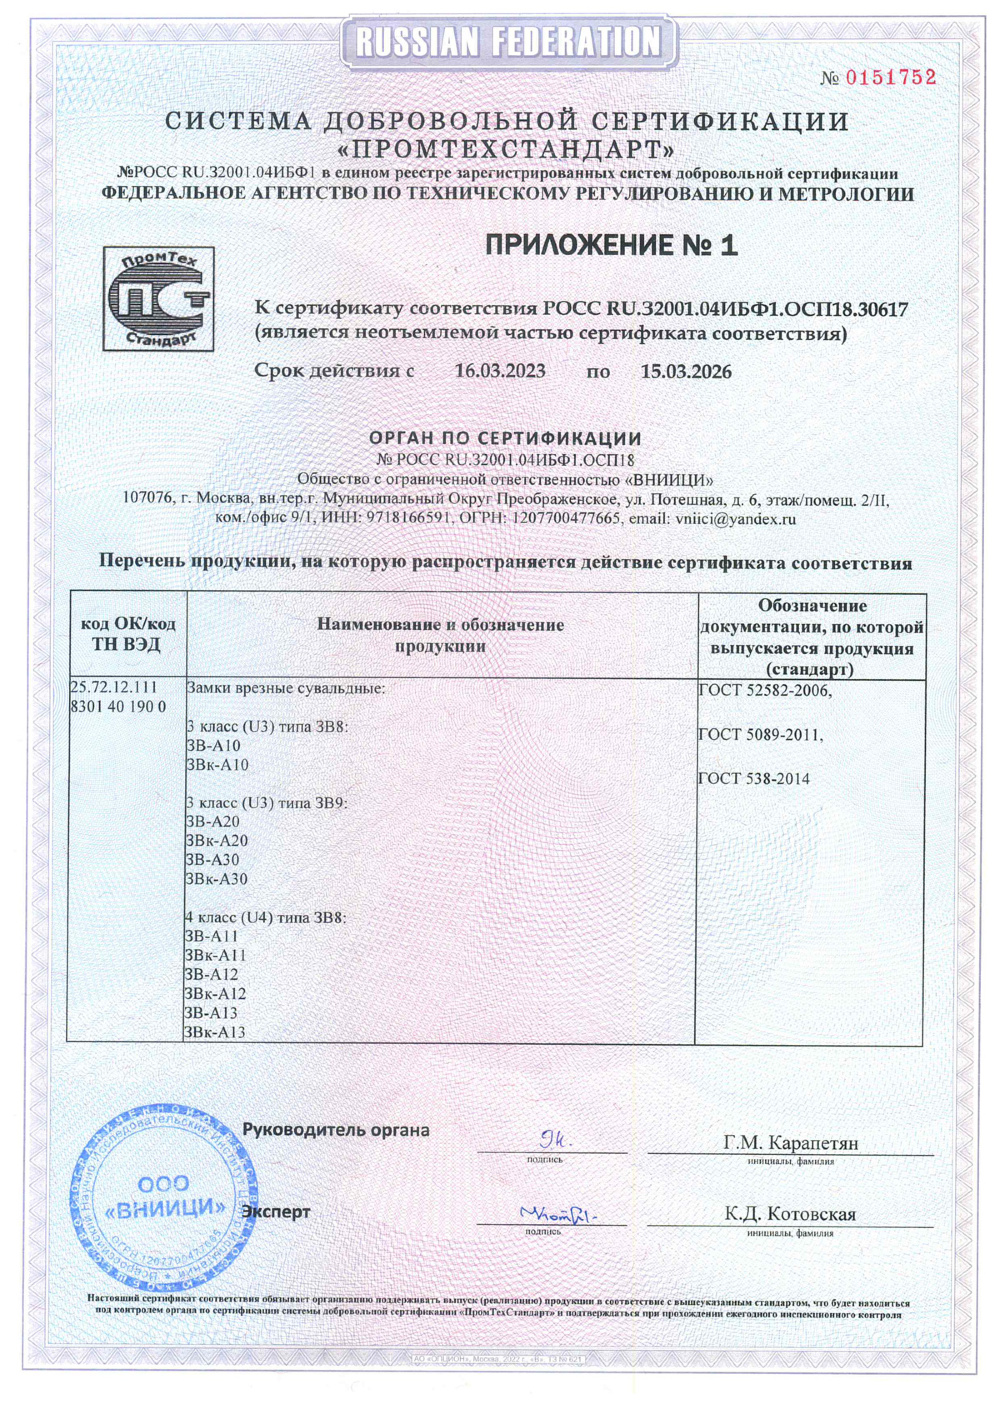 сертификат соответствия для замка А10-16 стр2